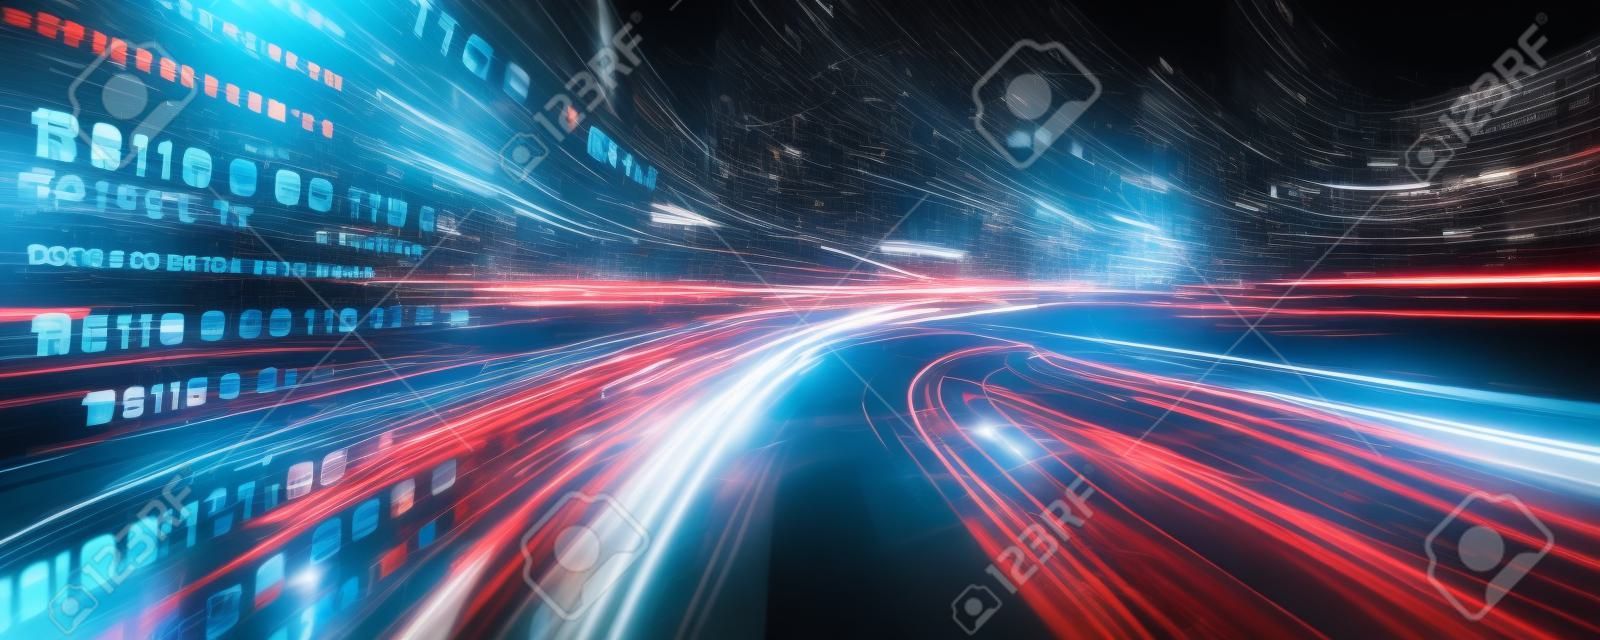 Digitaler Datenfluss auf der Straße mit Bewegungsunschärfe, um eine Vision von schneller Geschwindigkeitsübertragung zu schaffen. Konzept der zukünftigen digitalen Transformation, disruptive Innovation und agile Geschäftsmethodik.